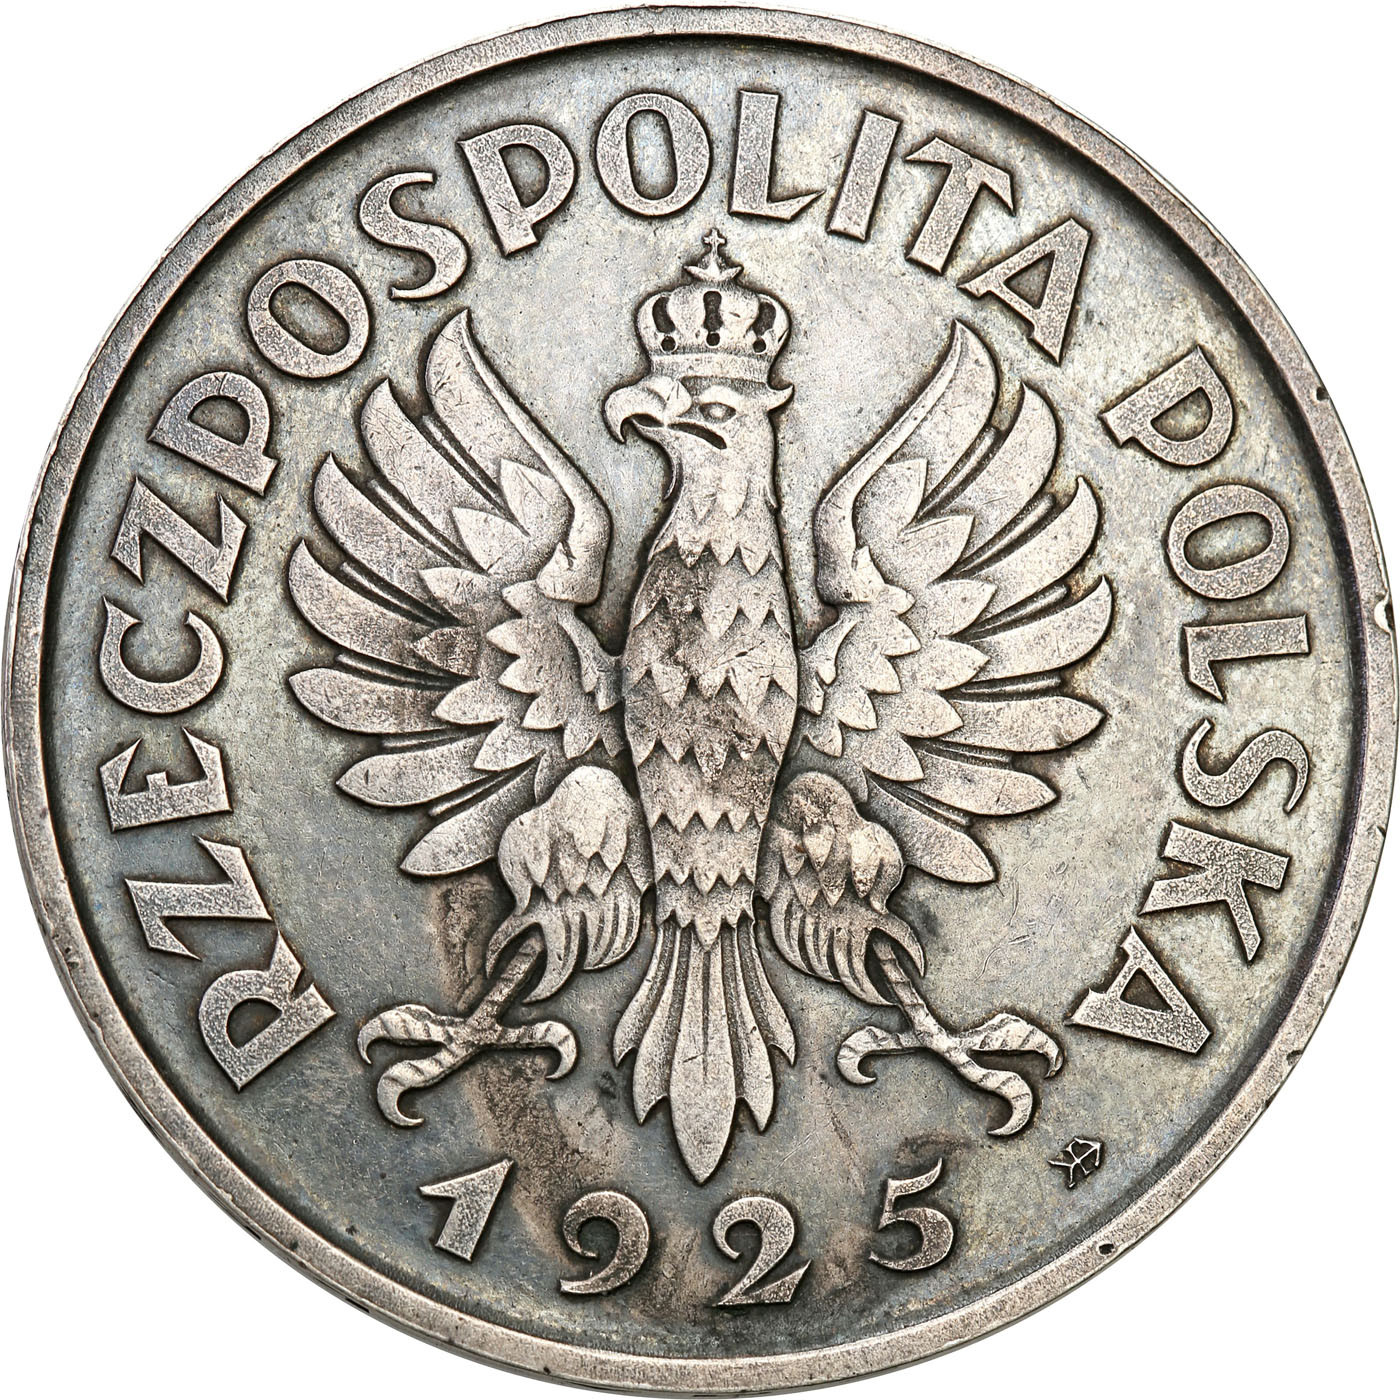 II RP. PRÓBA srebro 5 złotych 1925 Konstytucja 81 perełek